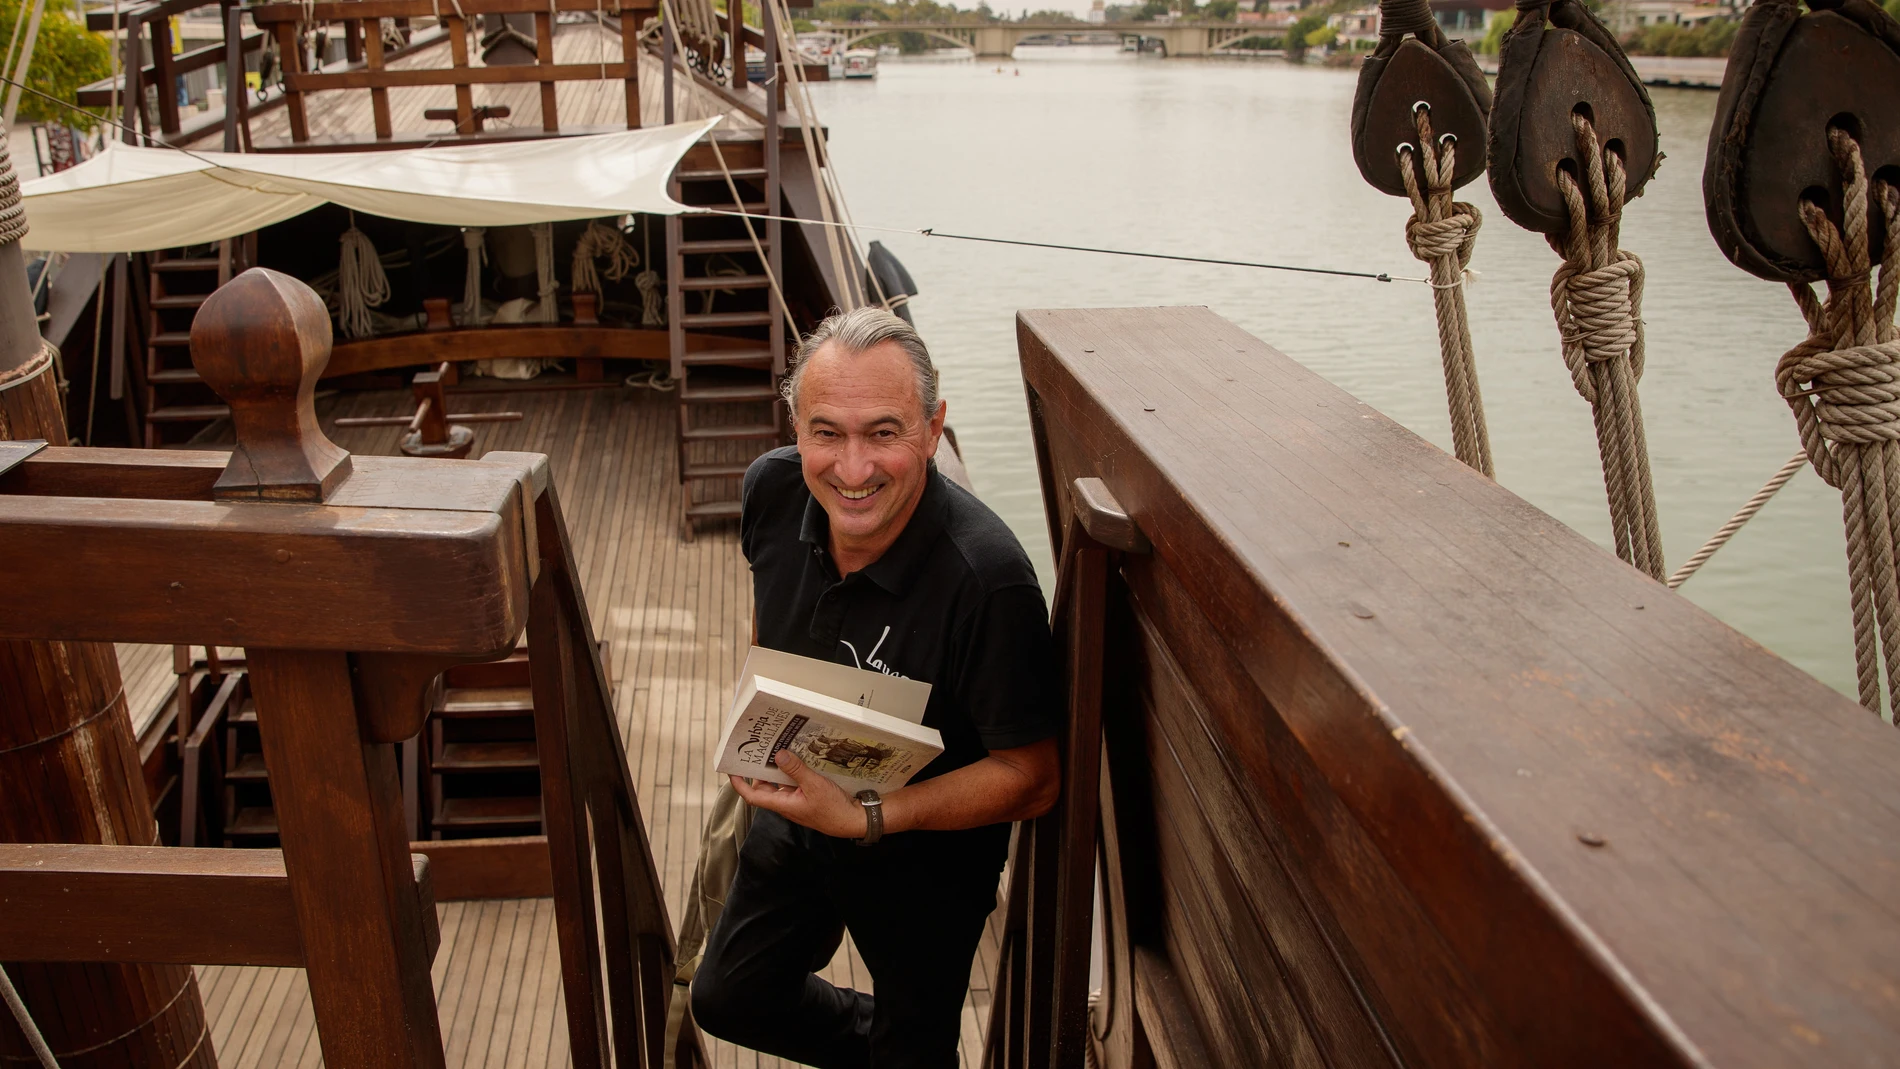 El historiador Ramón Jiménez Fraile posa con su libro a bordo de la réplica de la nao Victoria en río Guadalquivir en Sevilla. EFE /Julio Muñoz